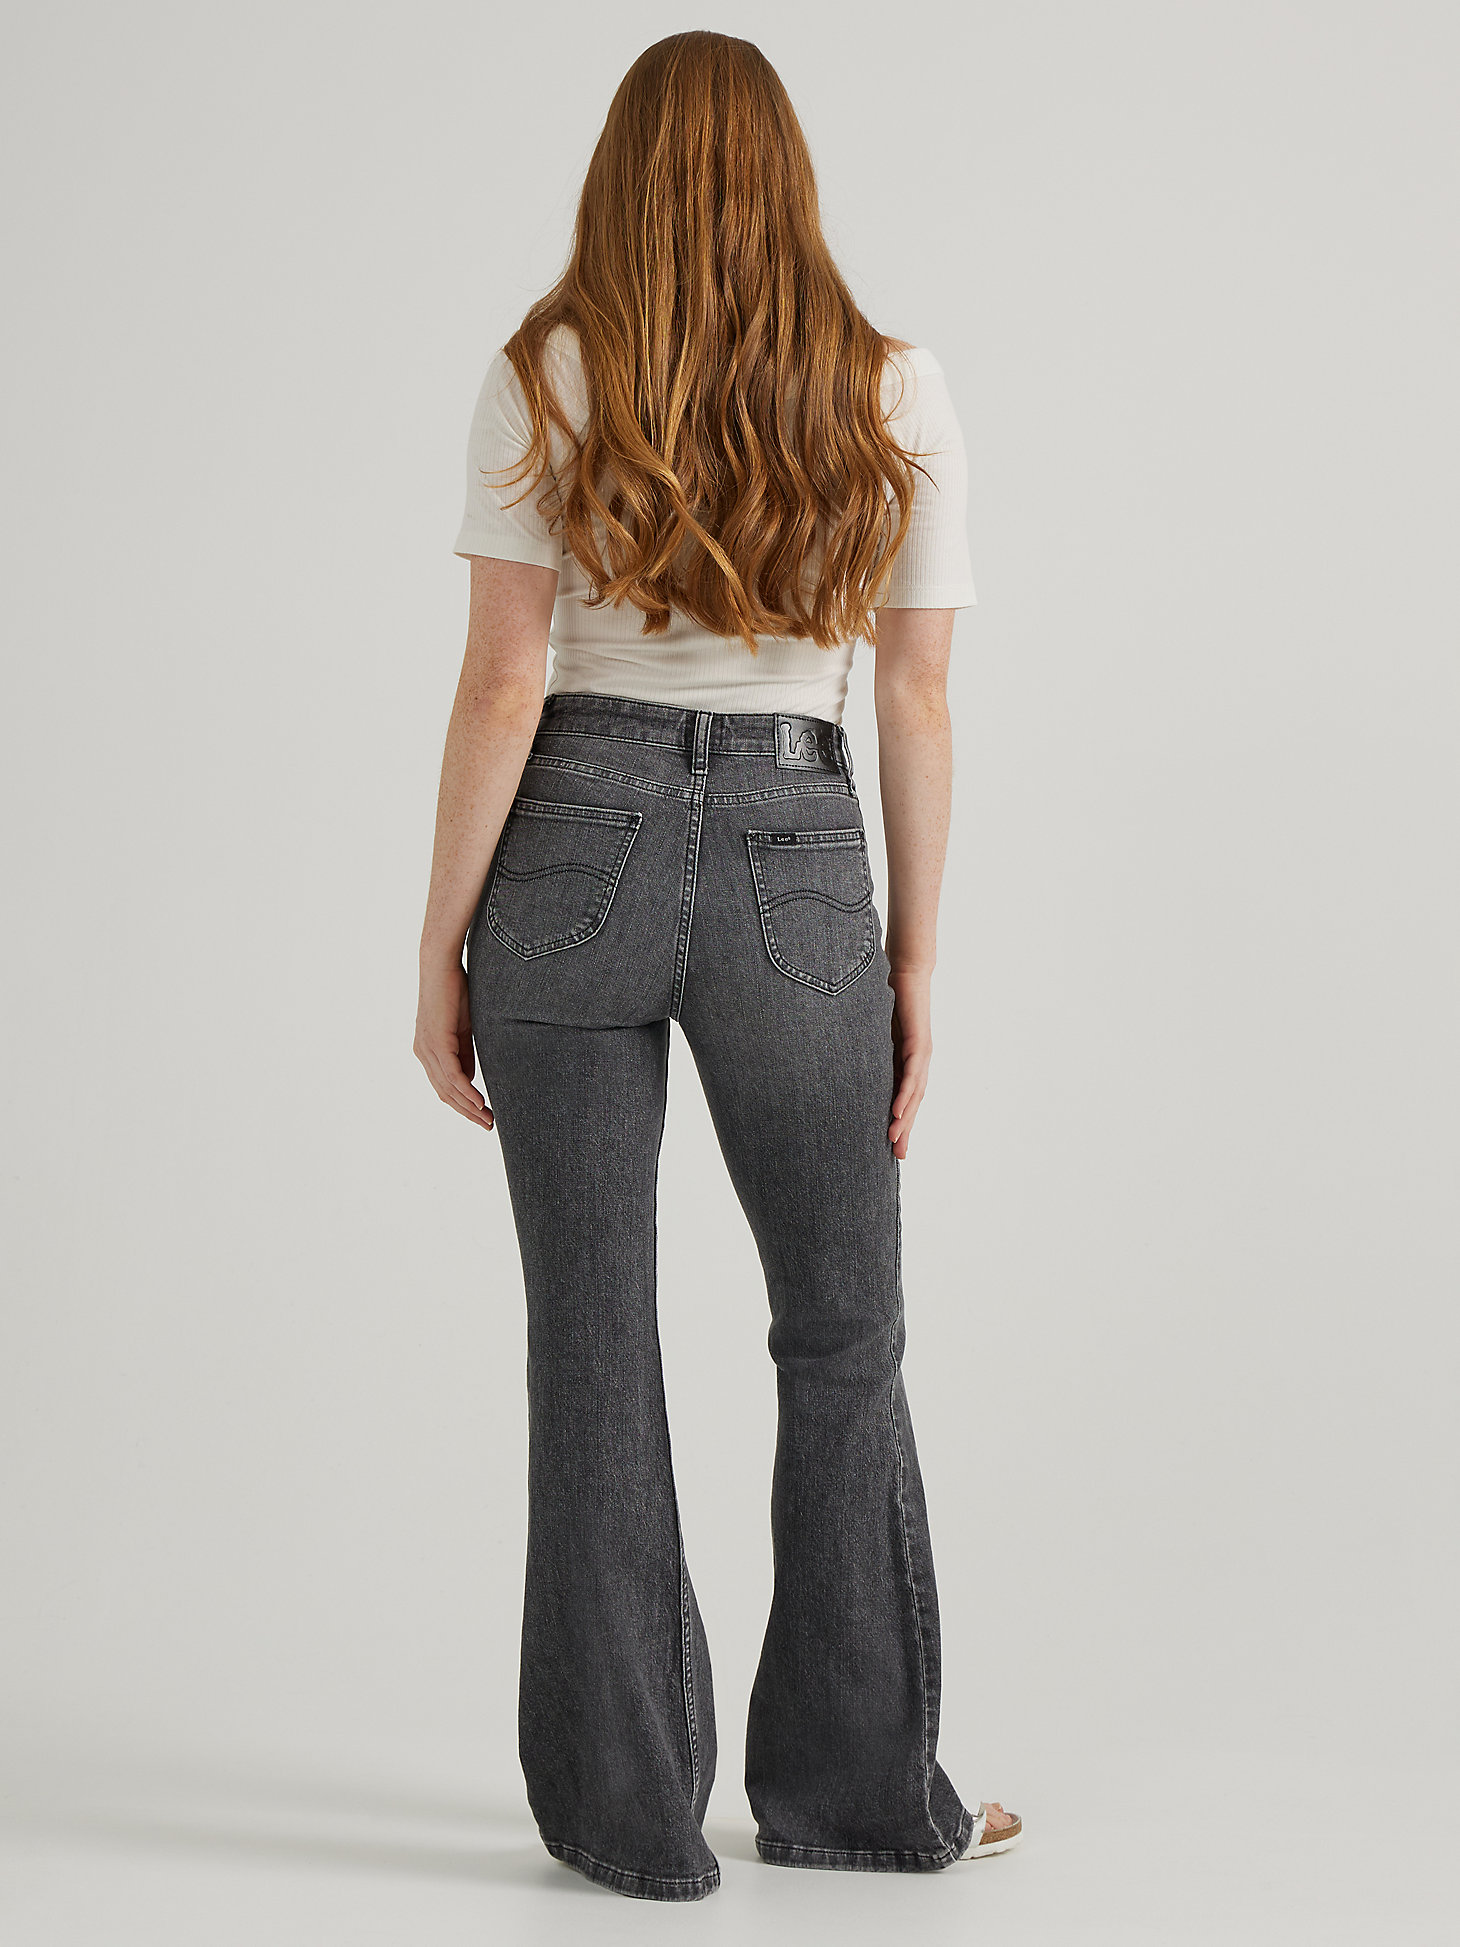 Women's Vintage Modern High Rise Flare Jean in One Dark Night alternative view 1